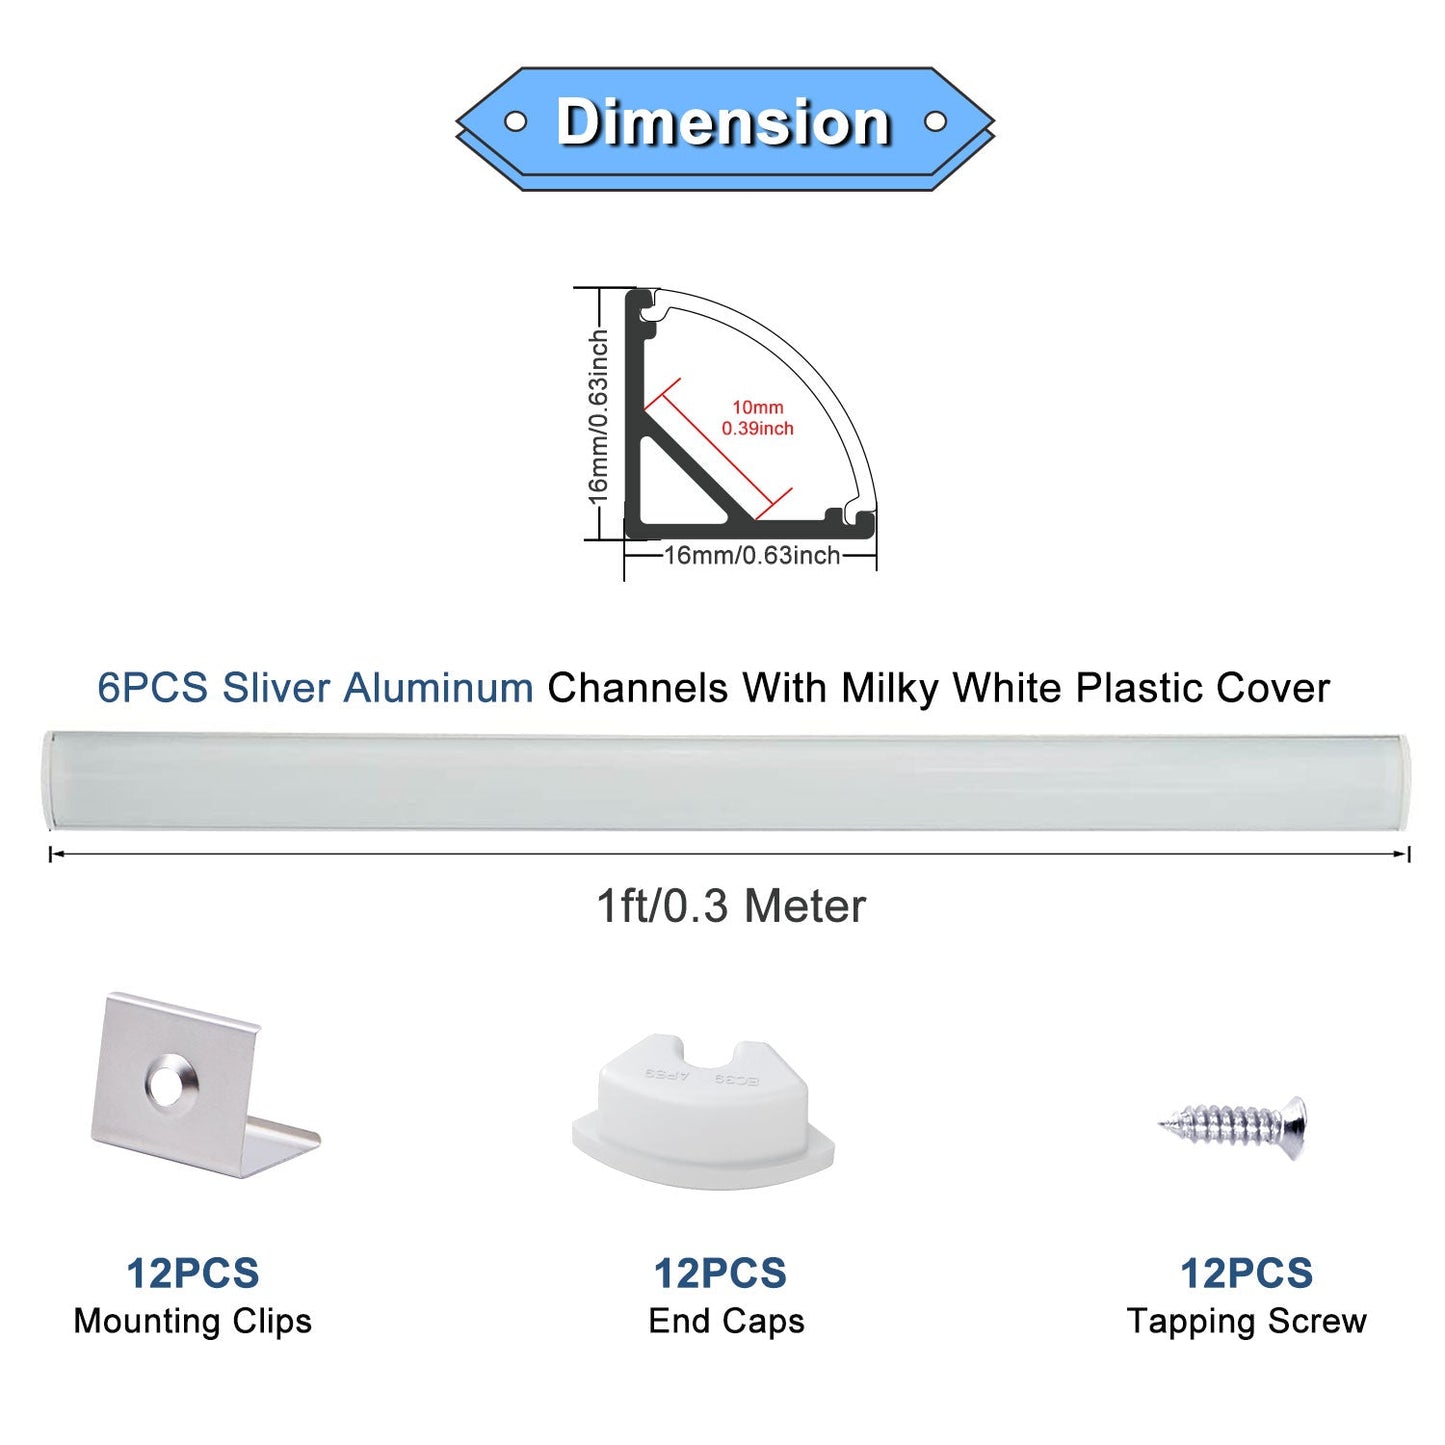 6PCS LED Aluminum Channel Kit for Strip Lights - Black/Black Versatile & Easy Install | VST